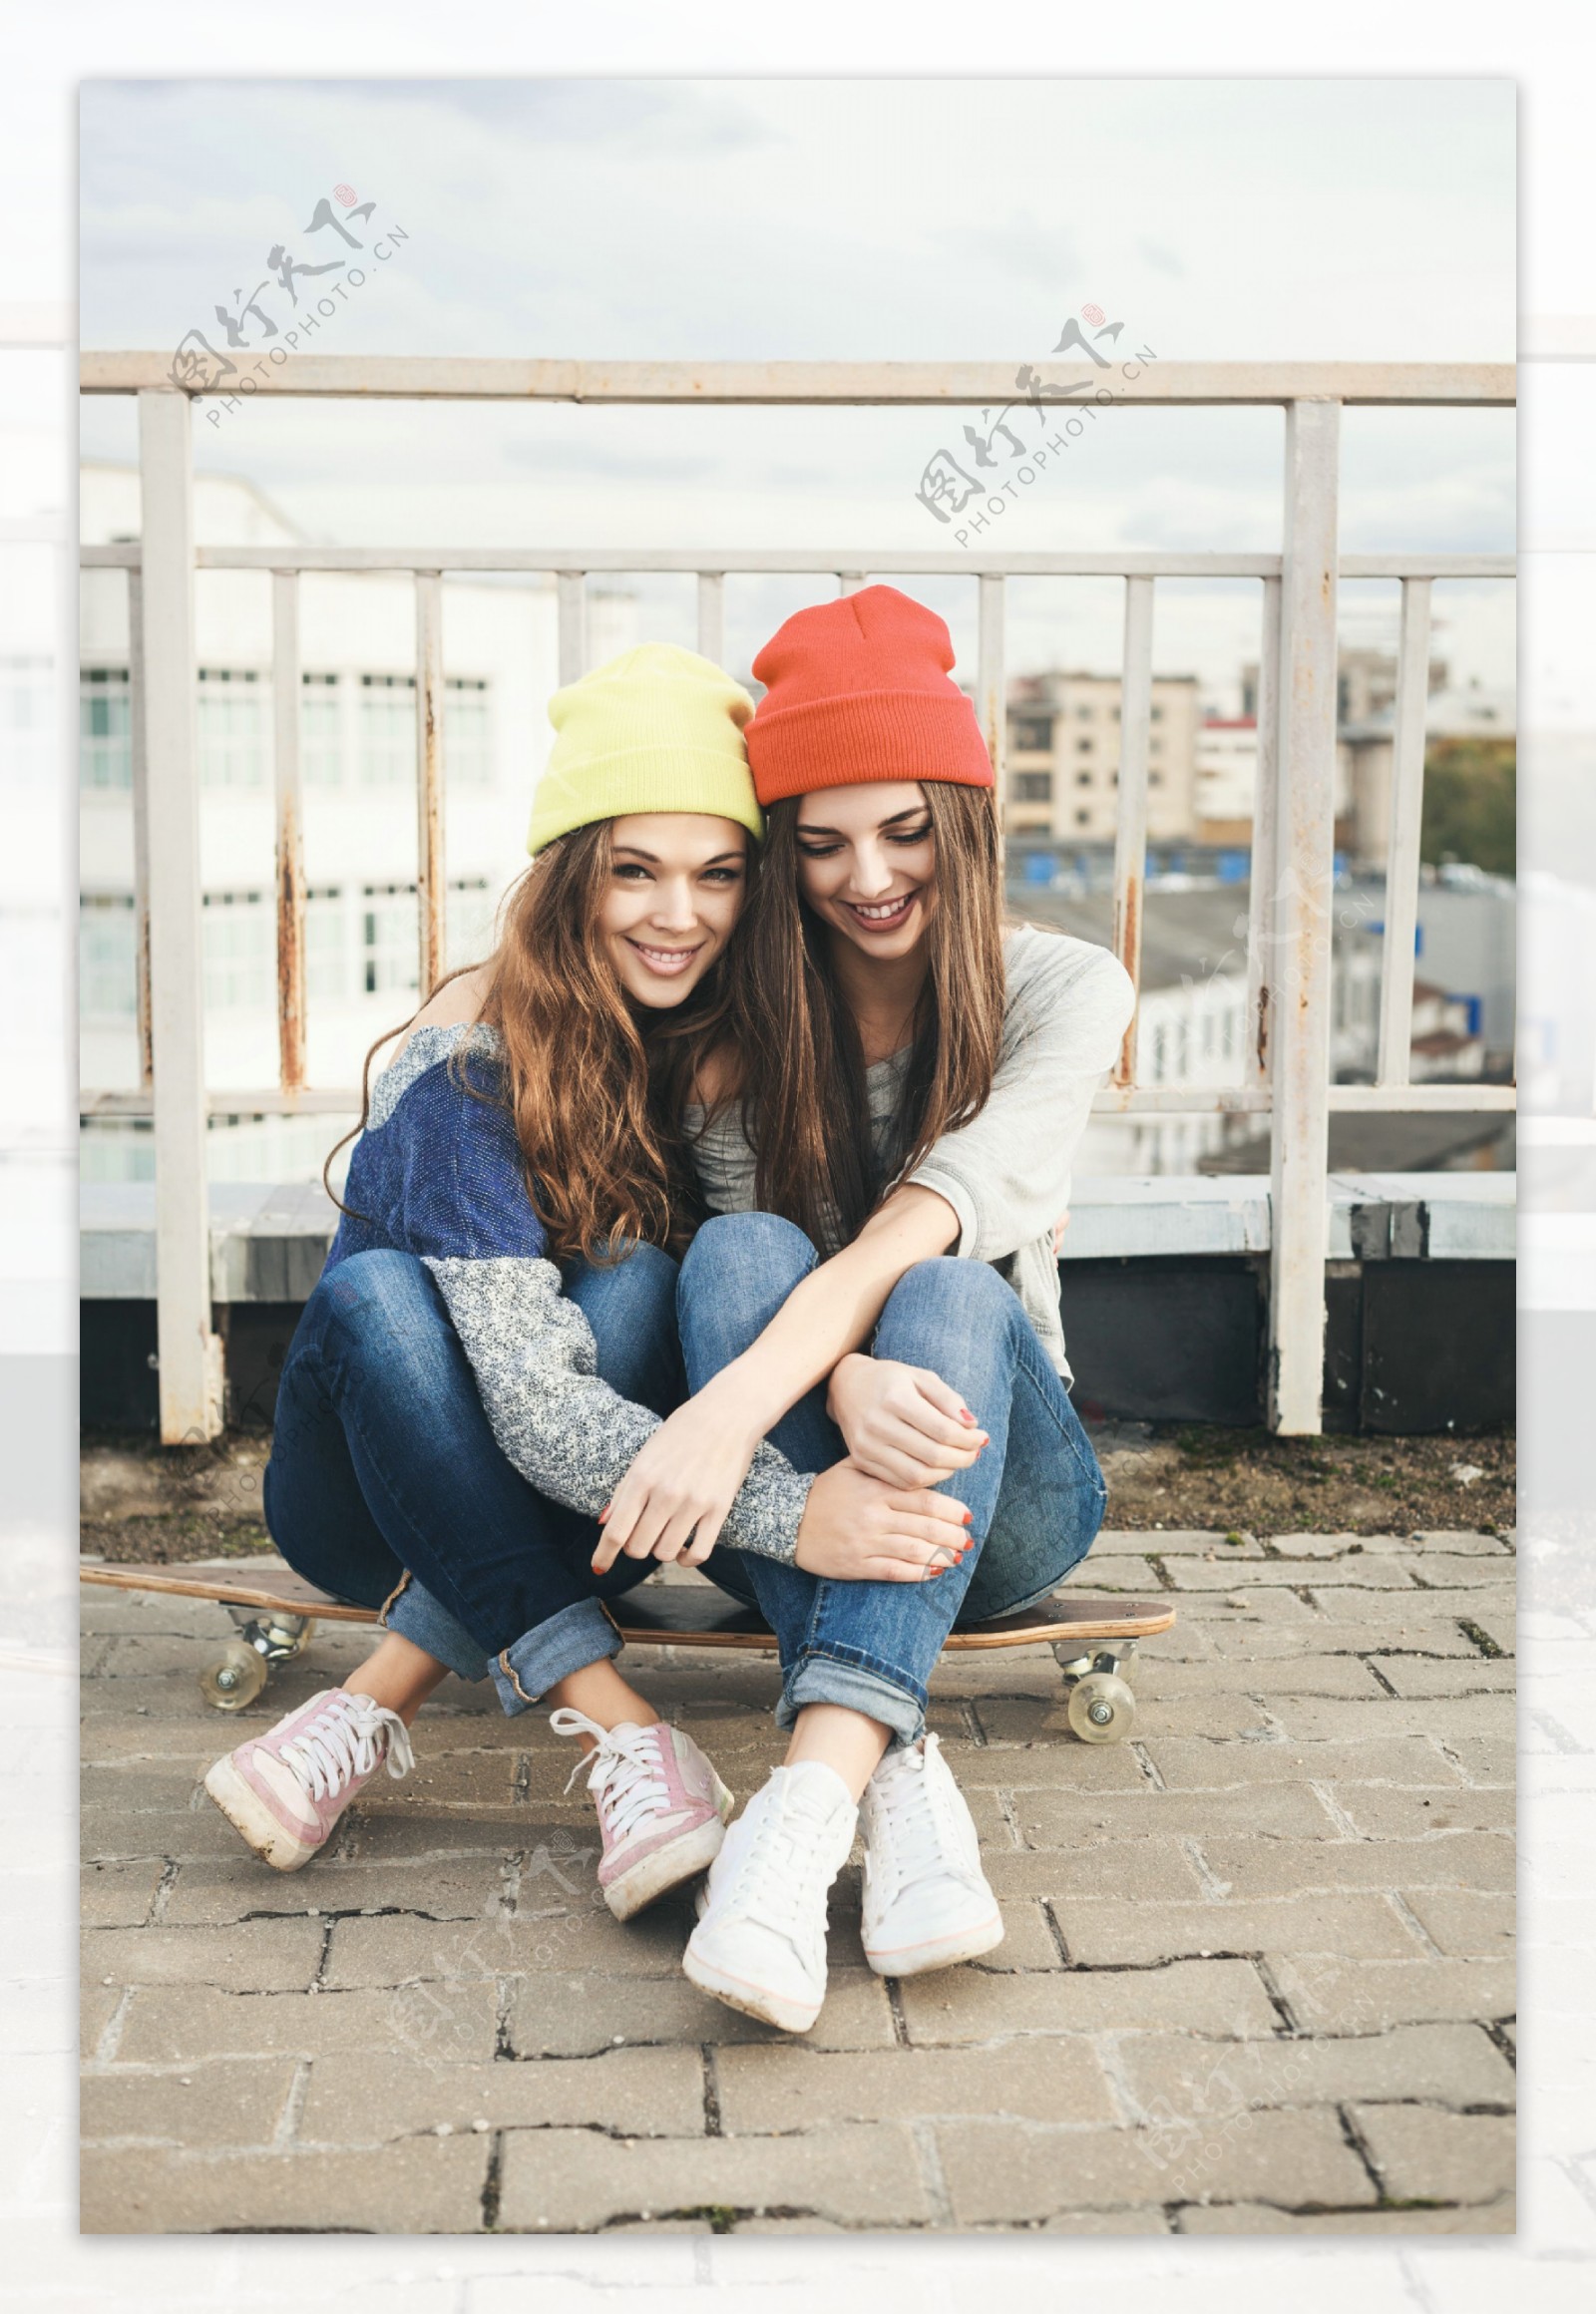 坐在滑板上的两个戴帽子美女图片